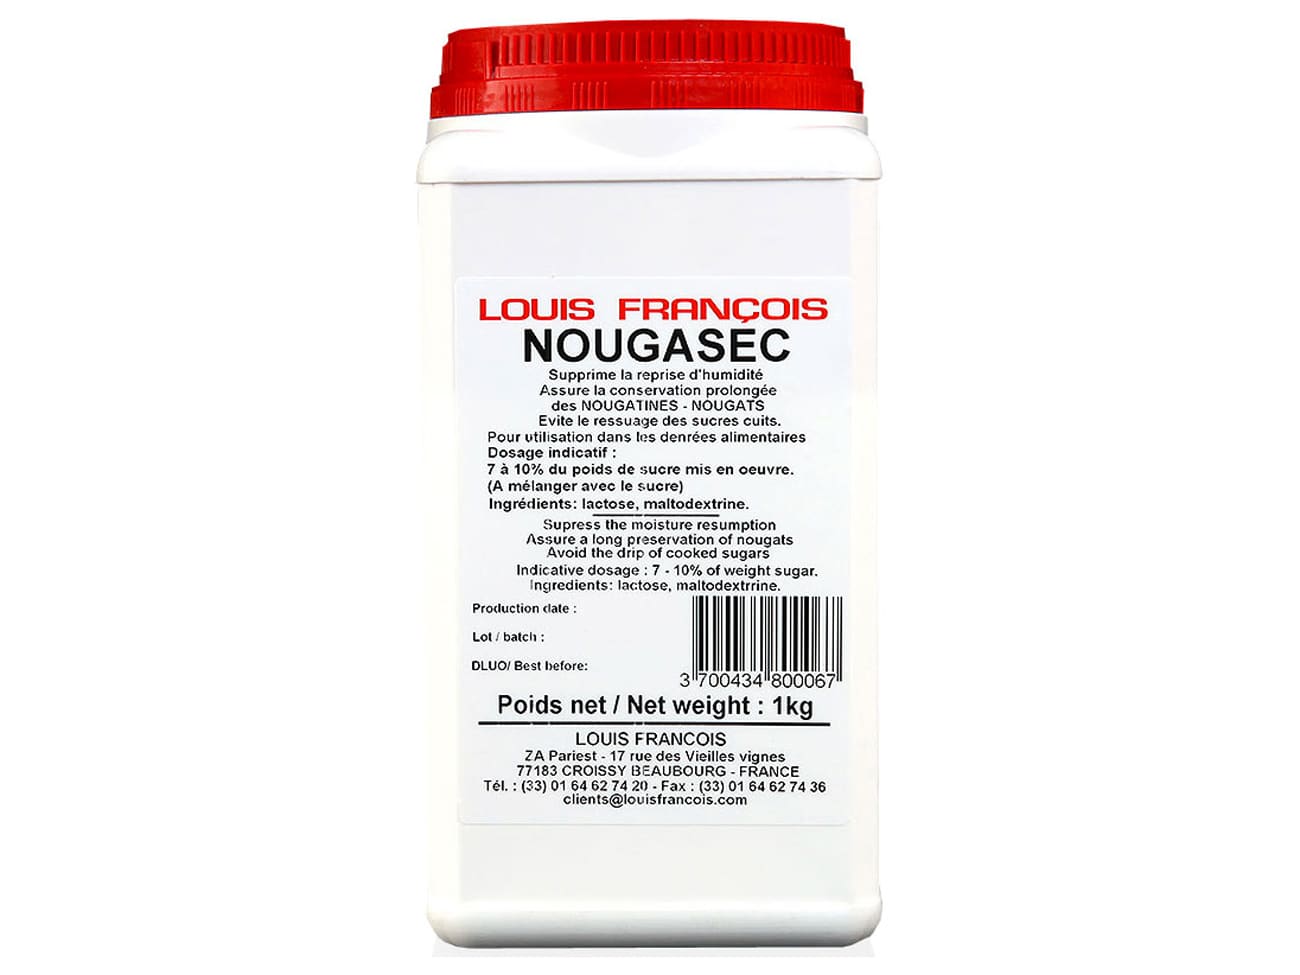 Lot 3x Sirop de glucose parfumé au miel - Pot 1kg